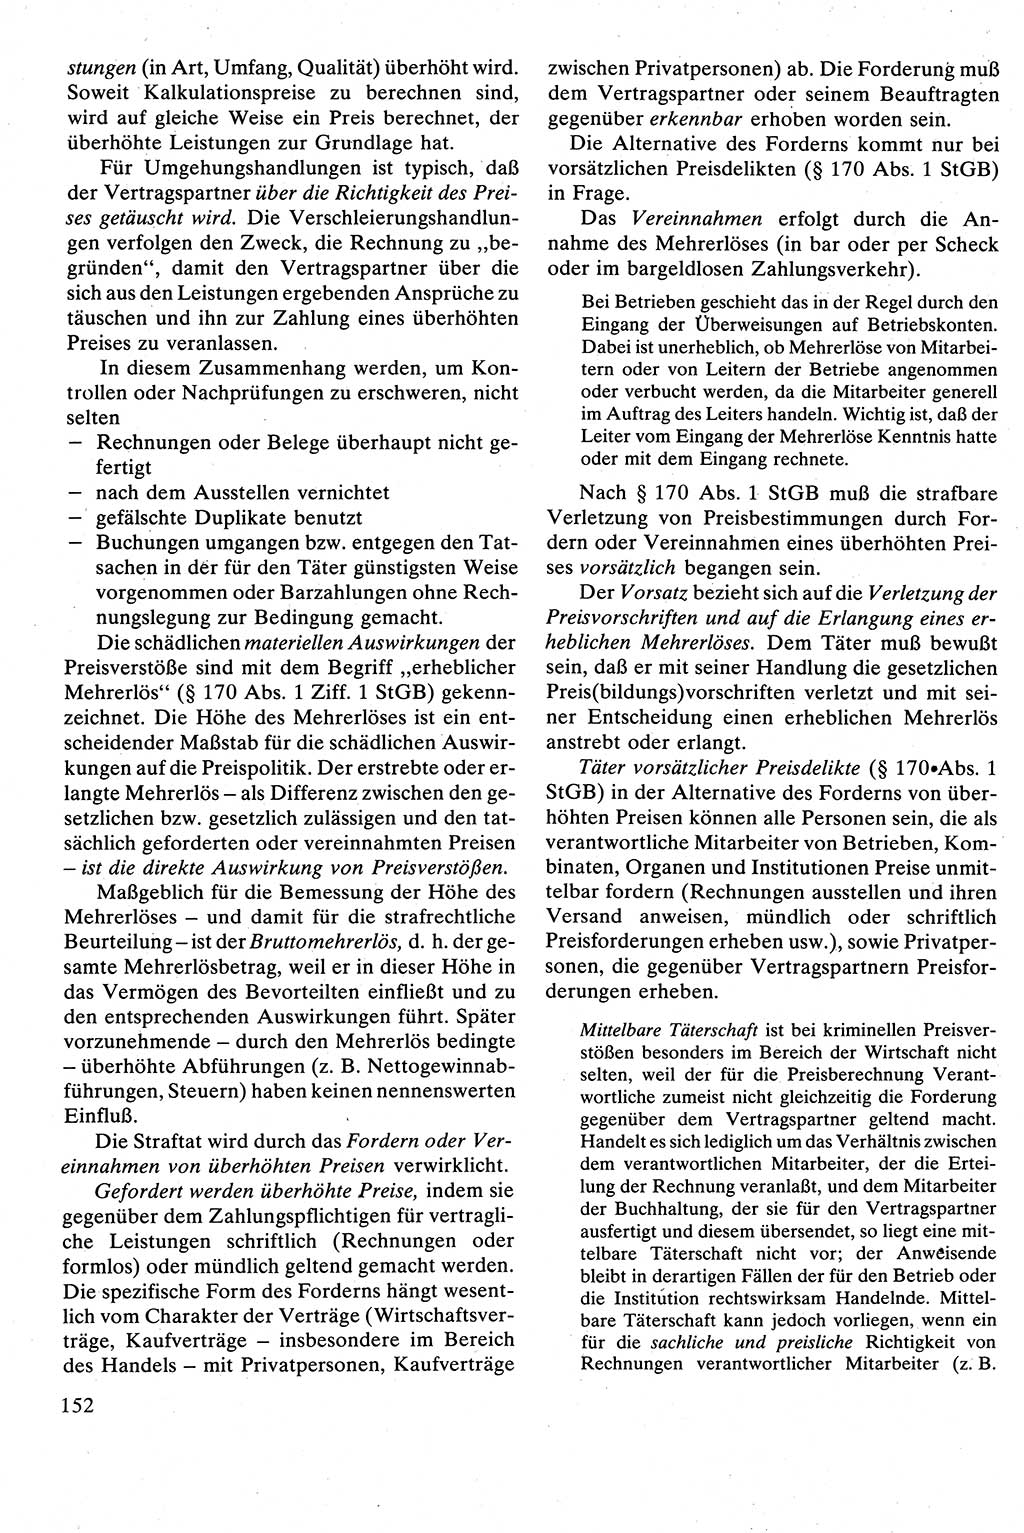 Strafrecht [Deutsche Demokratische Republik (DDR)], Besonderer Teil, Lehrbuch 1981, Seite 152 (Strafr. DDR BT Lb. 1981, S. 152)